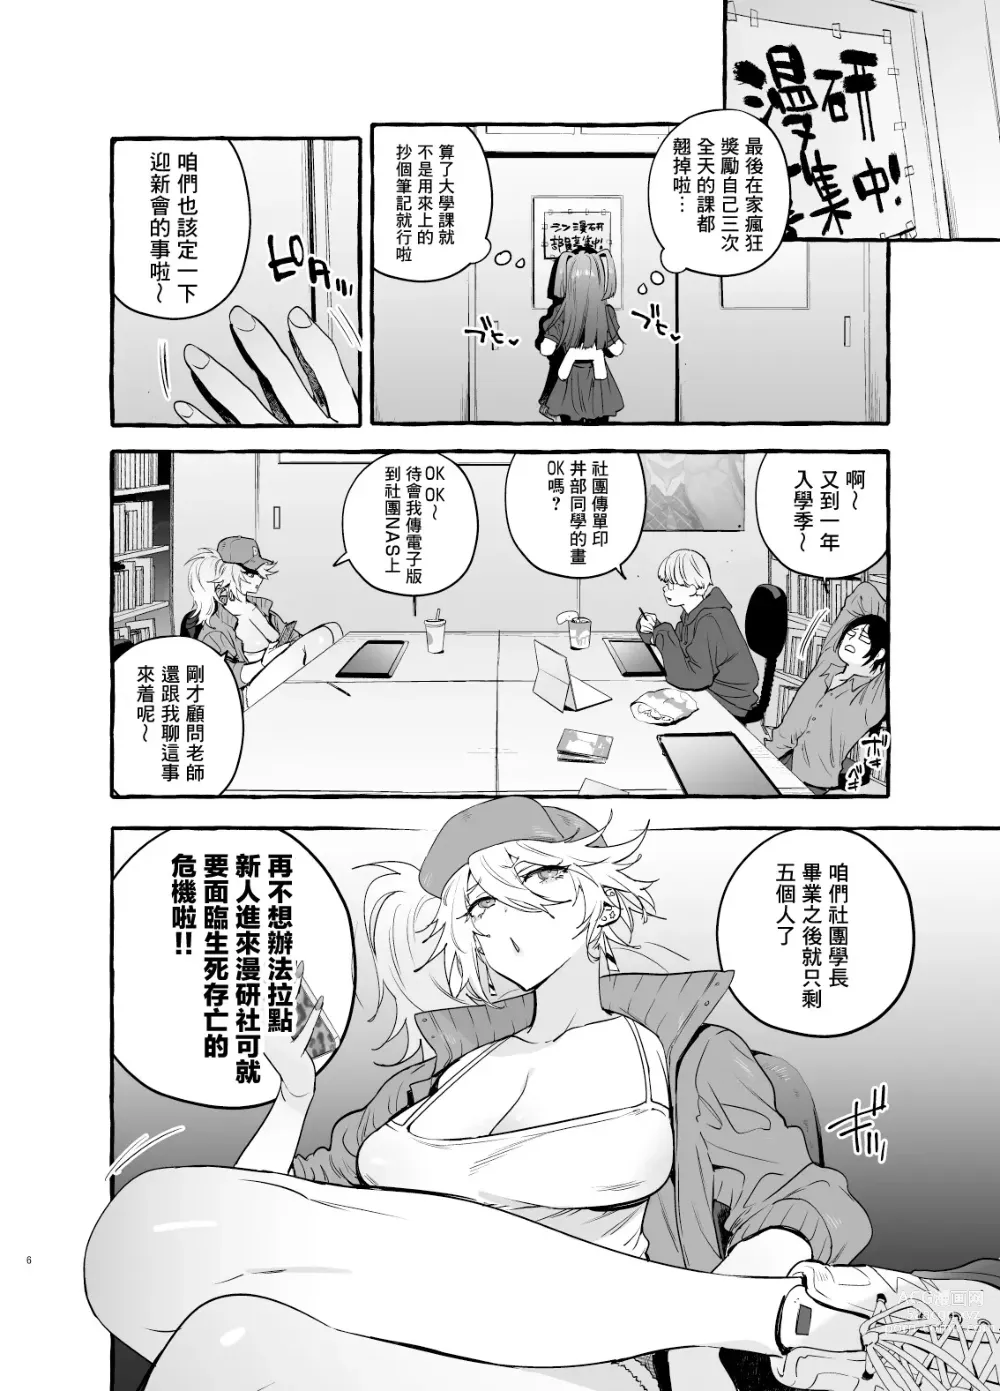 Page 9 of doujinshi 宅男社团的辣妹VS地雷男